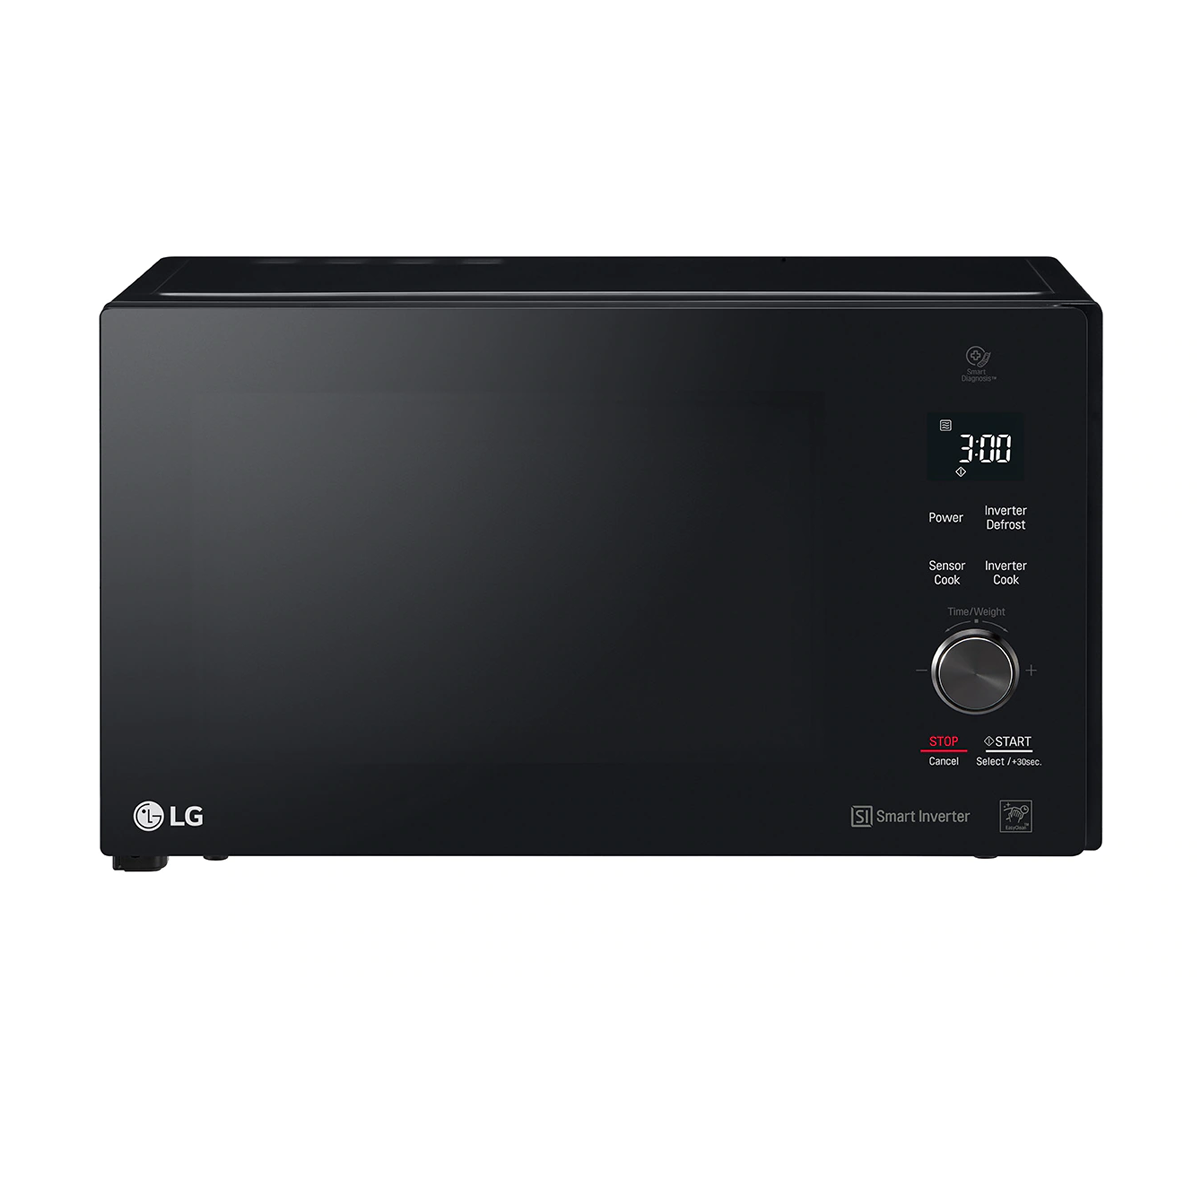 LG 42L Smart Inverter Microwave Oven